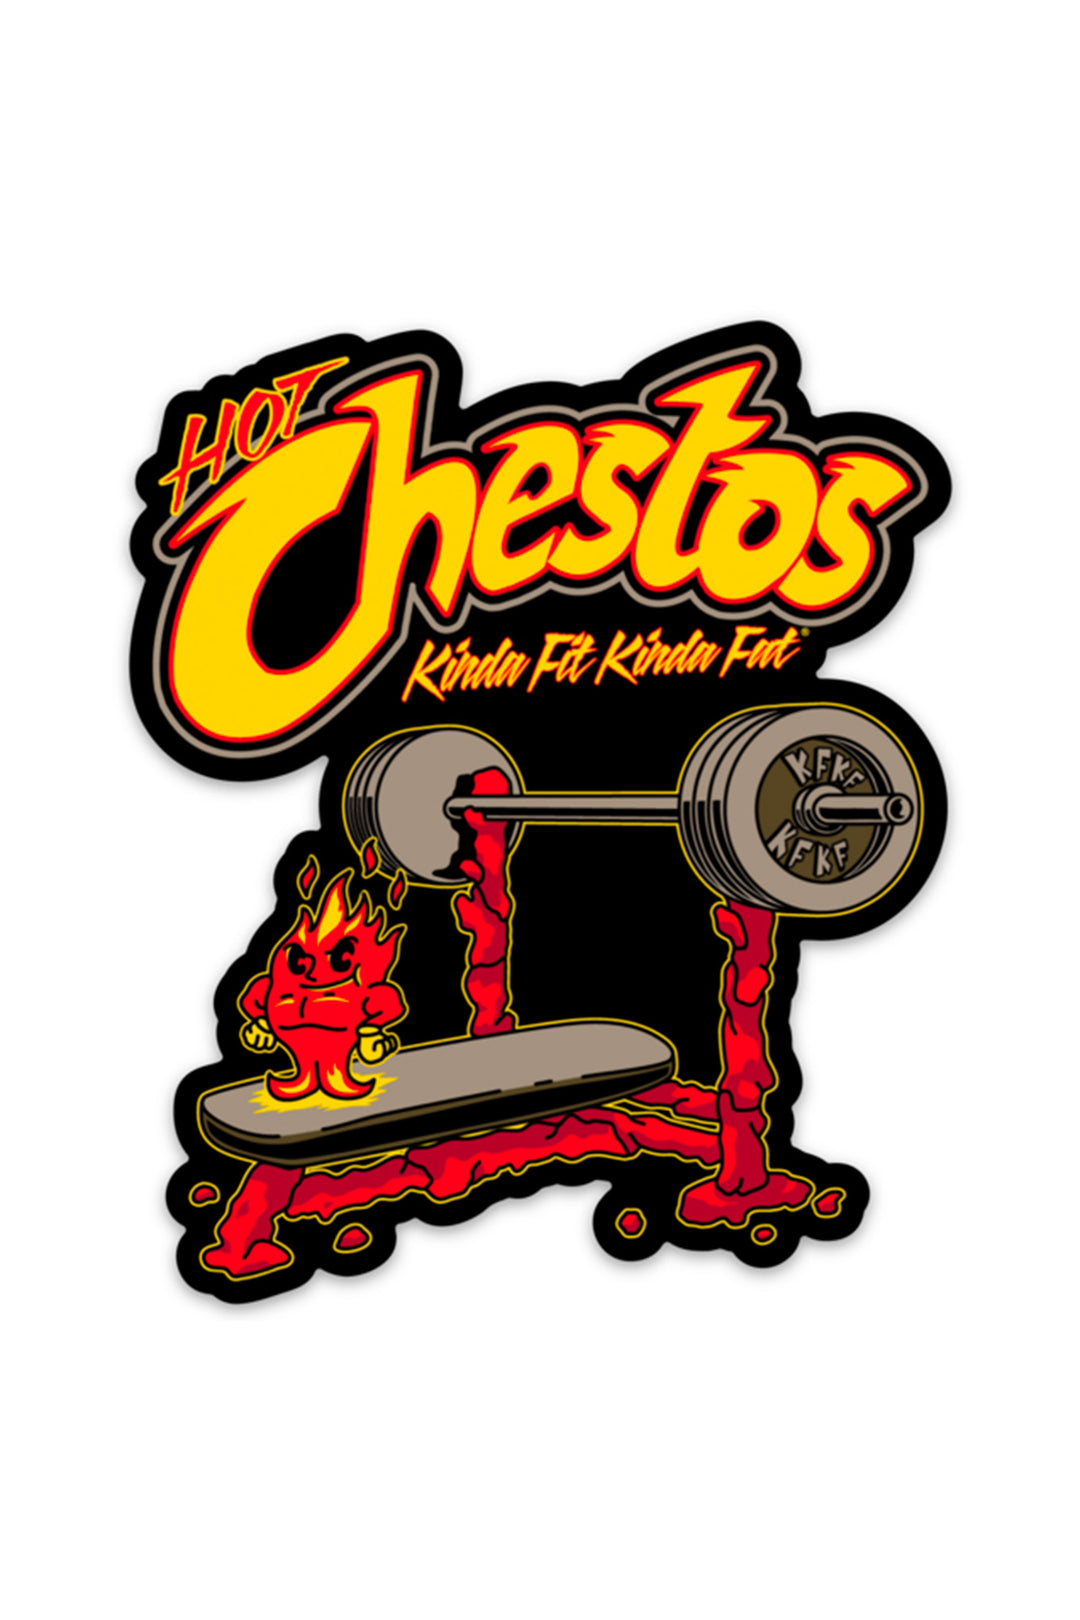 Hot Chestos Sticker